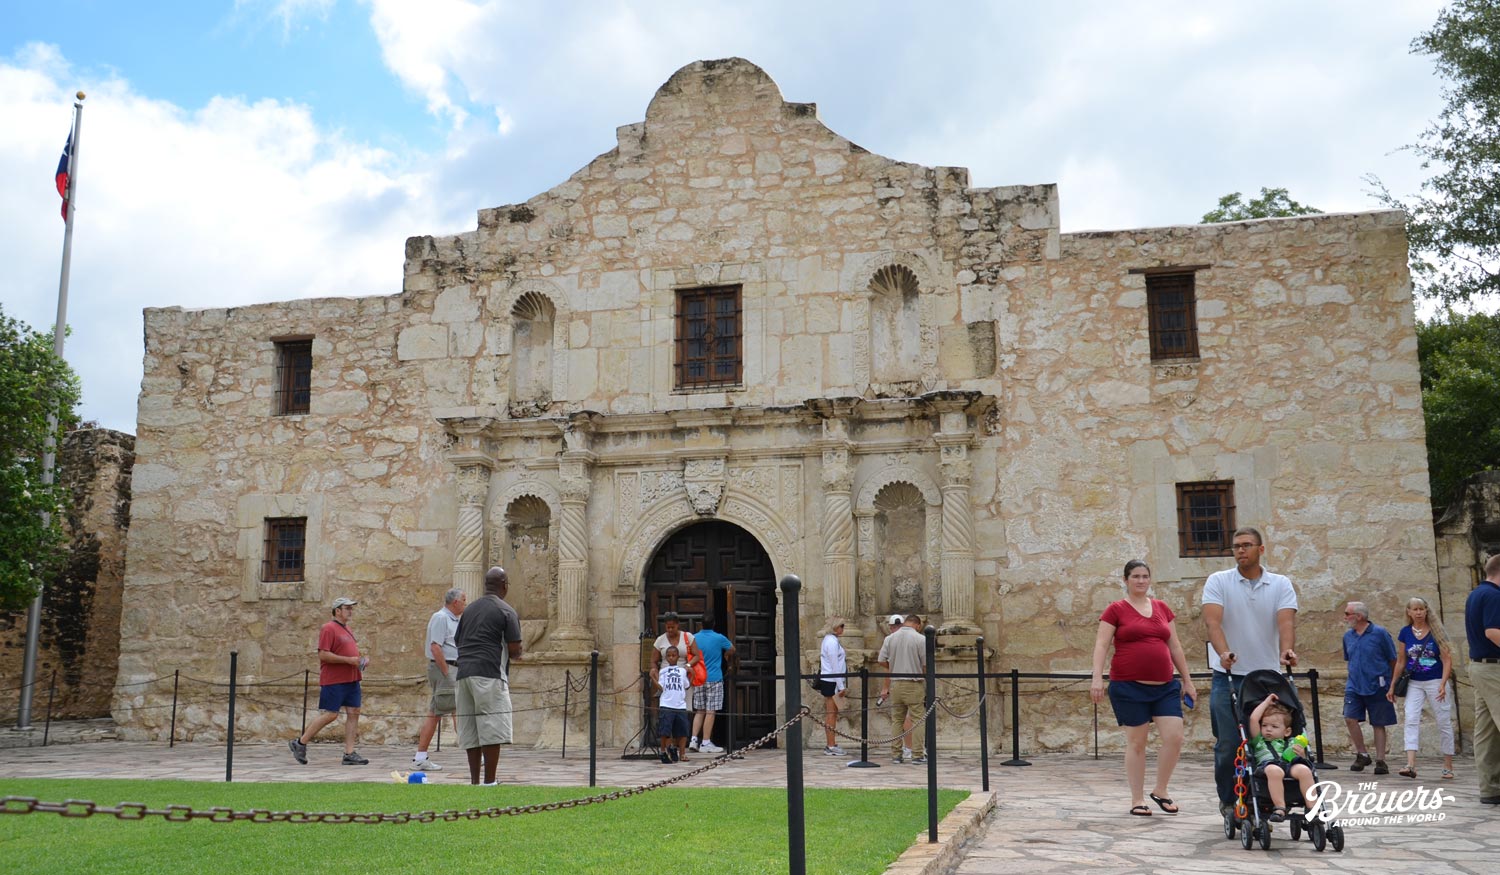 Alamo in San Antonio Texas